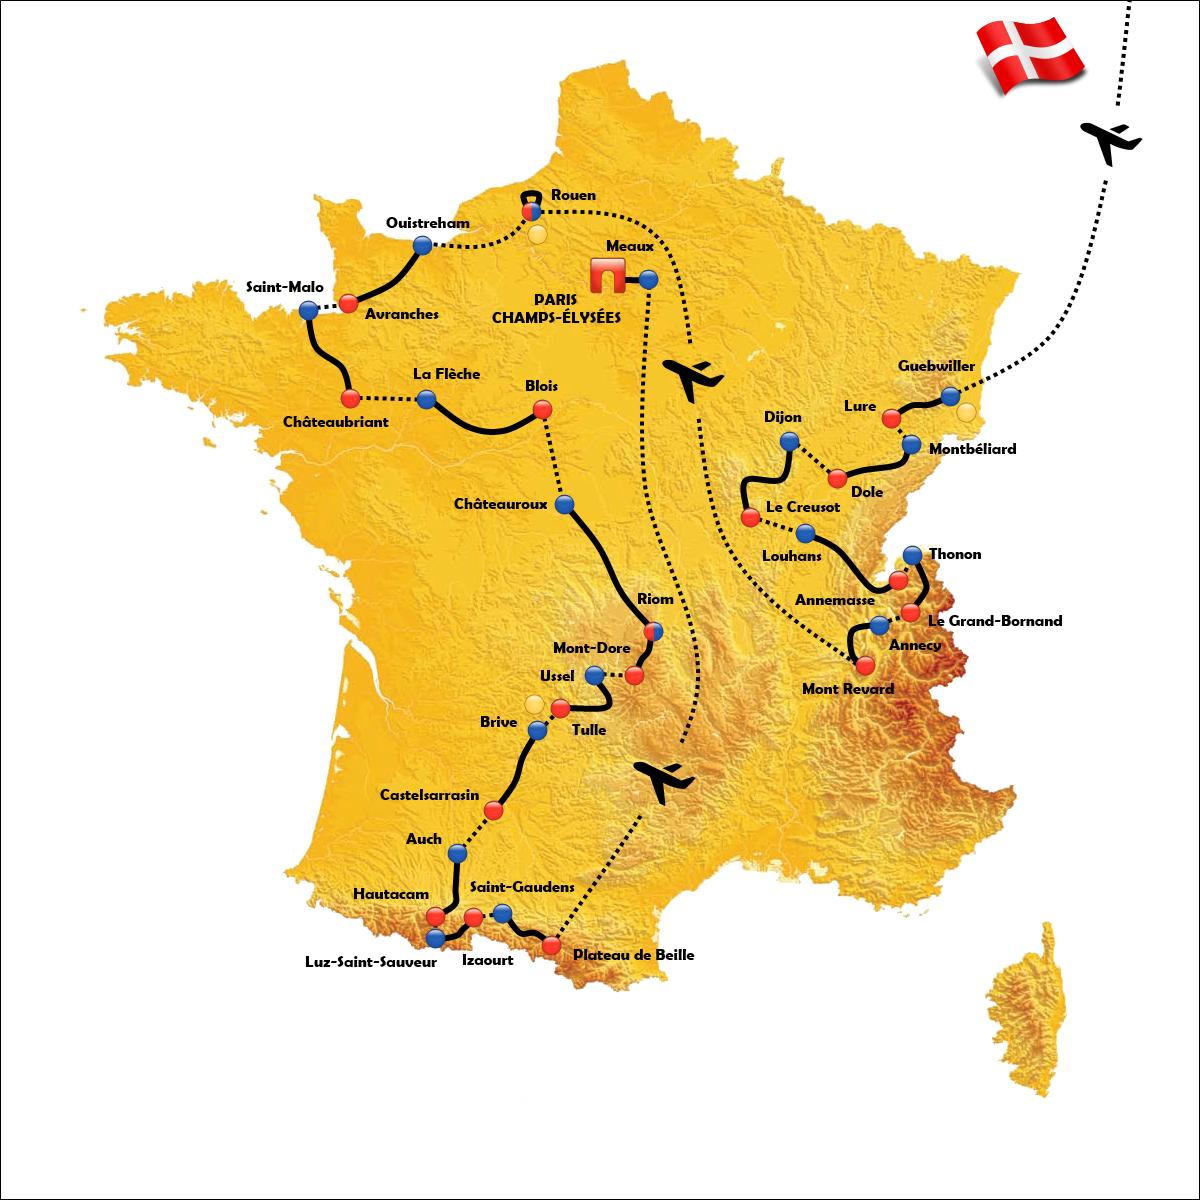 Tour De France 2021 Gesamtwertung